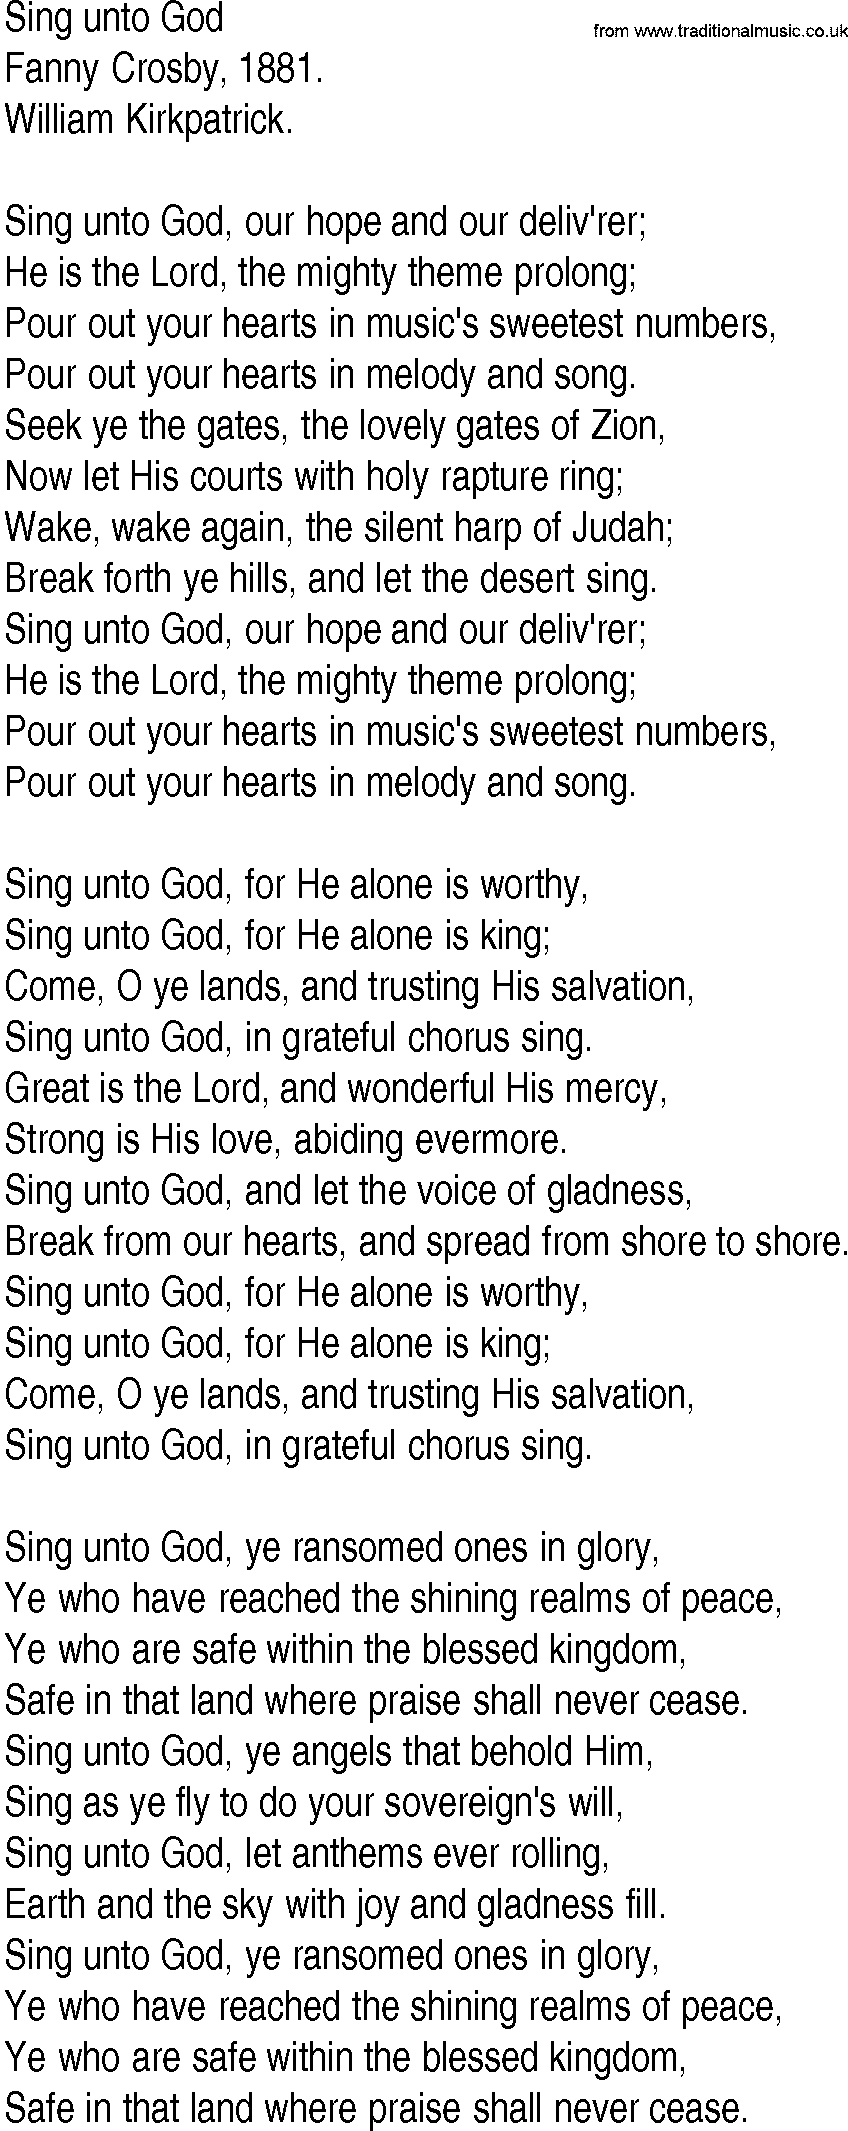 Hymn and Gospel Song: Sing unto God by Fanny Crosby lyrics